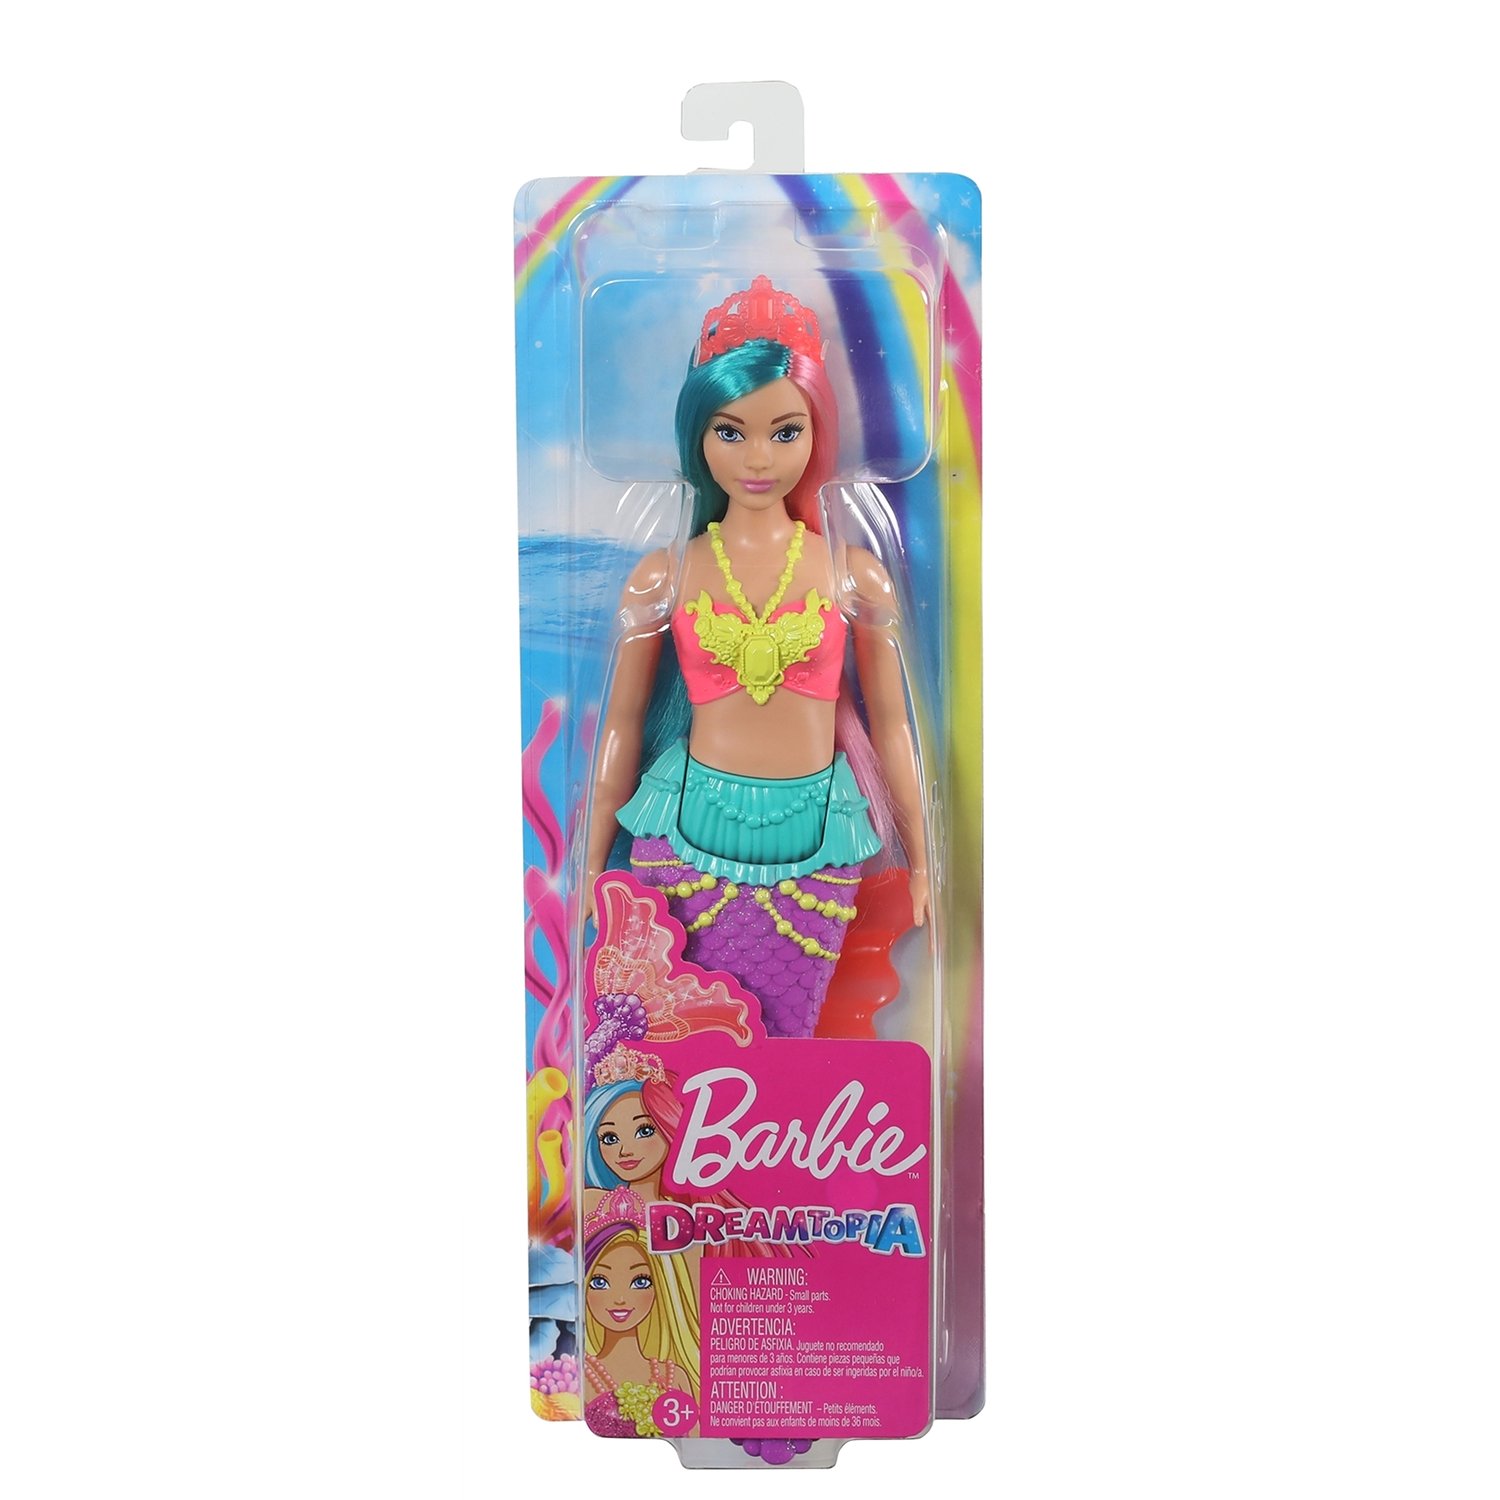 Кукла Barbie Dreamtopia Русалочка 4, GJK11